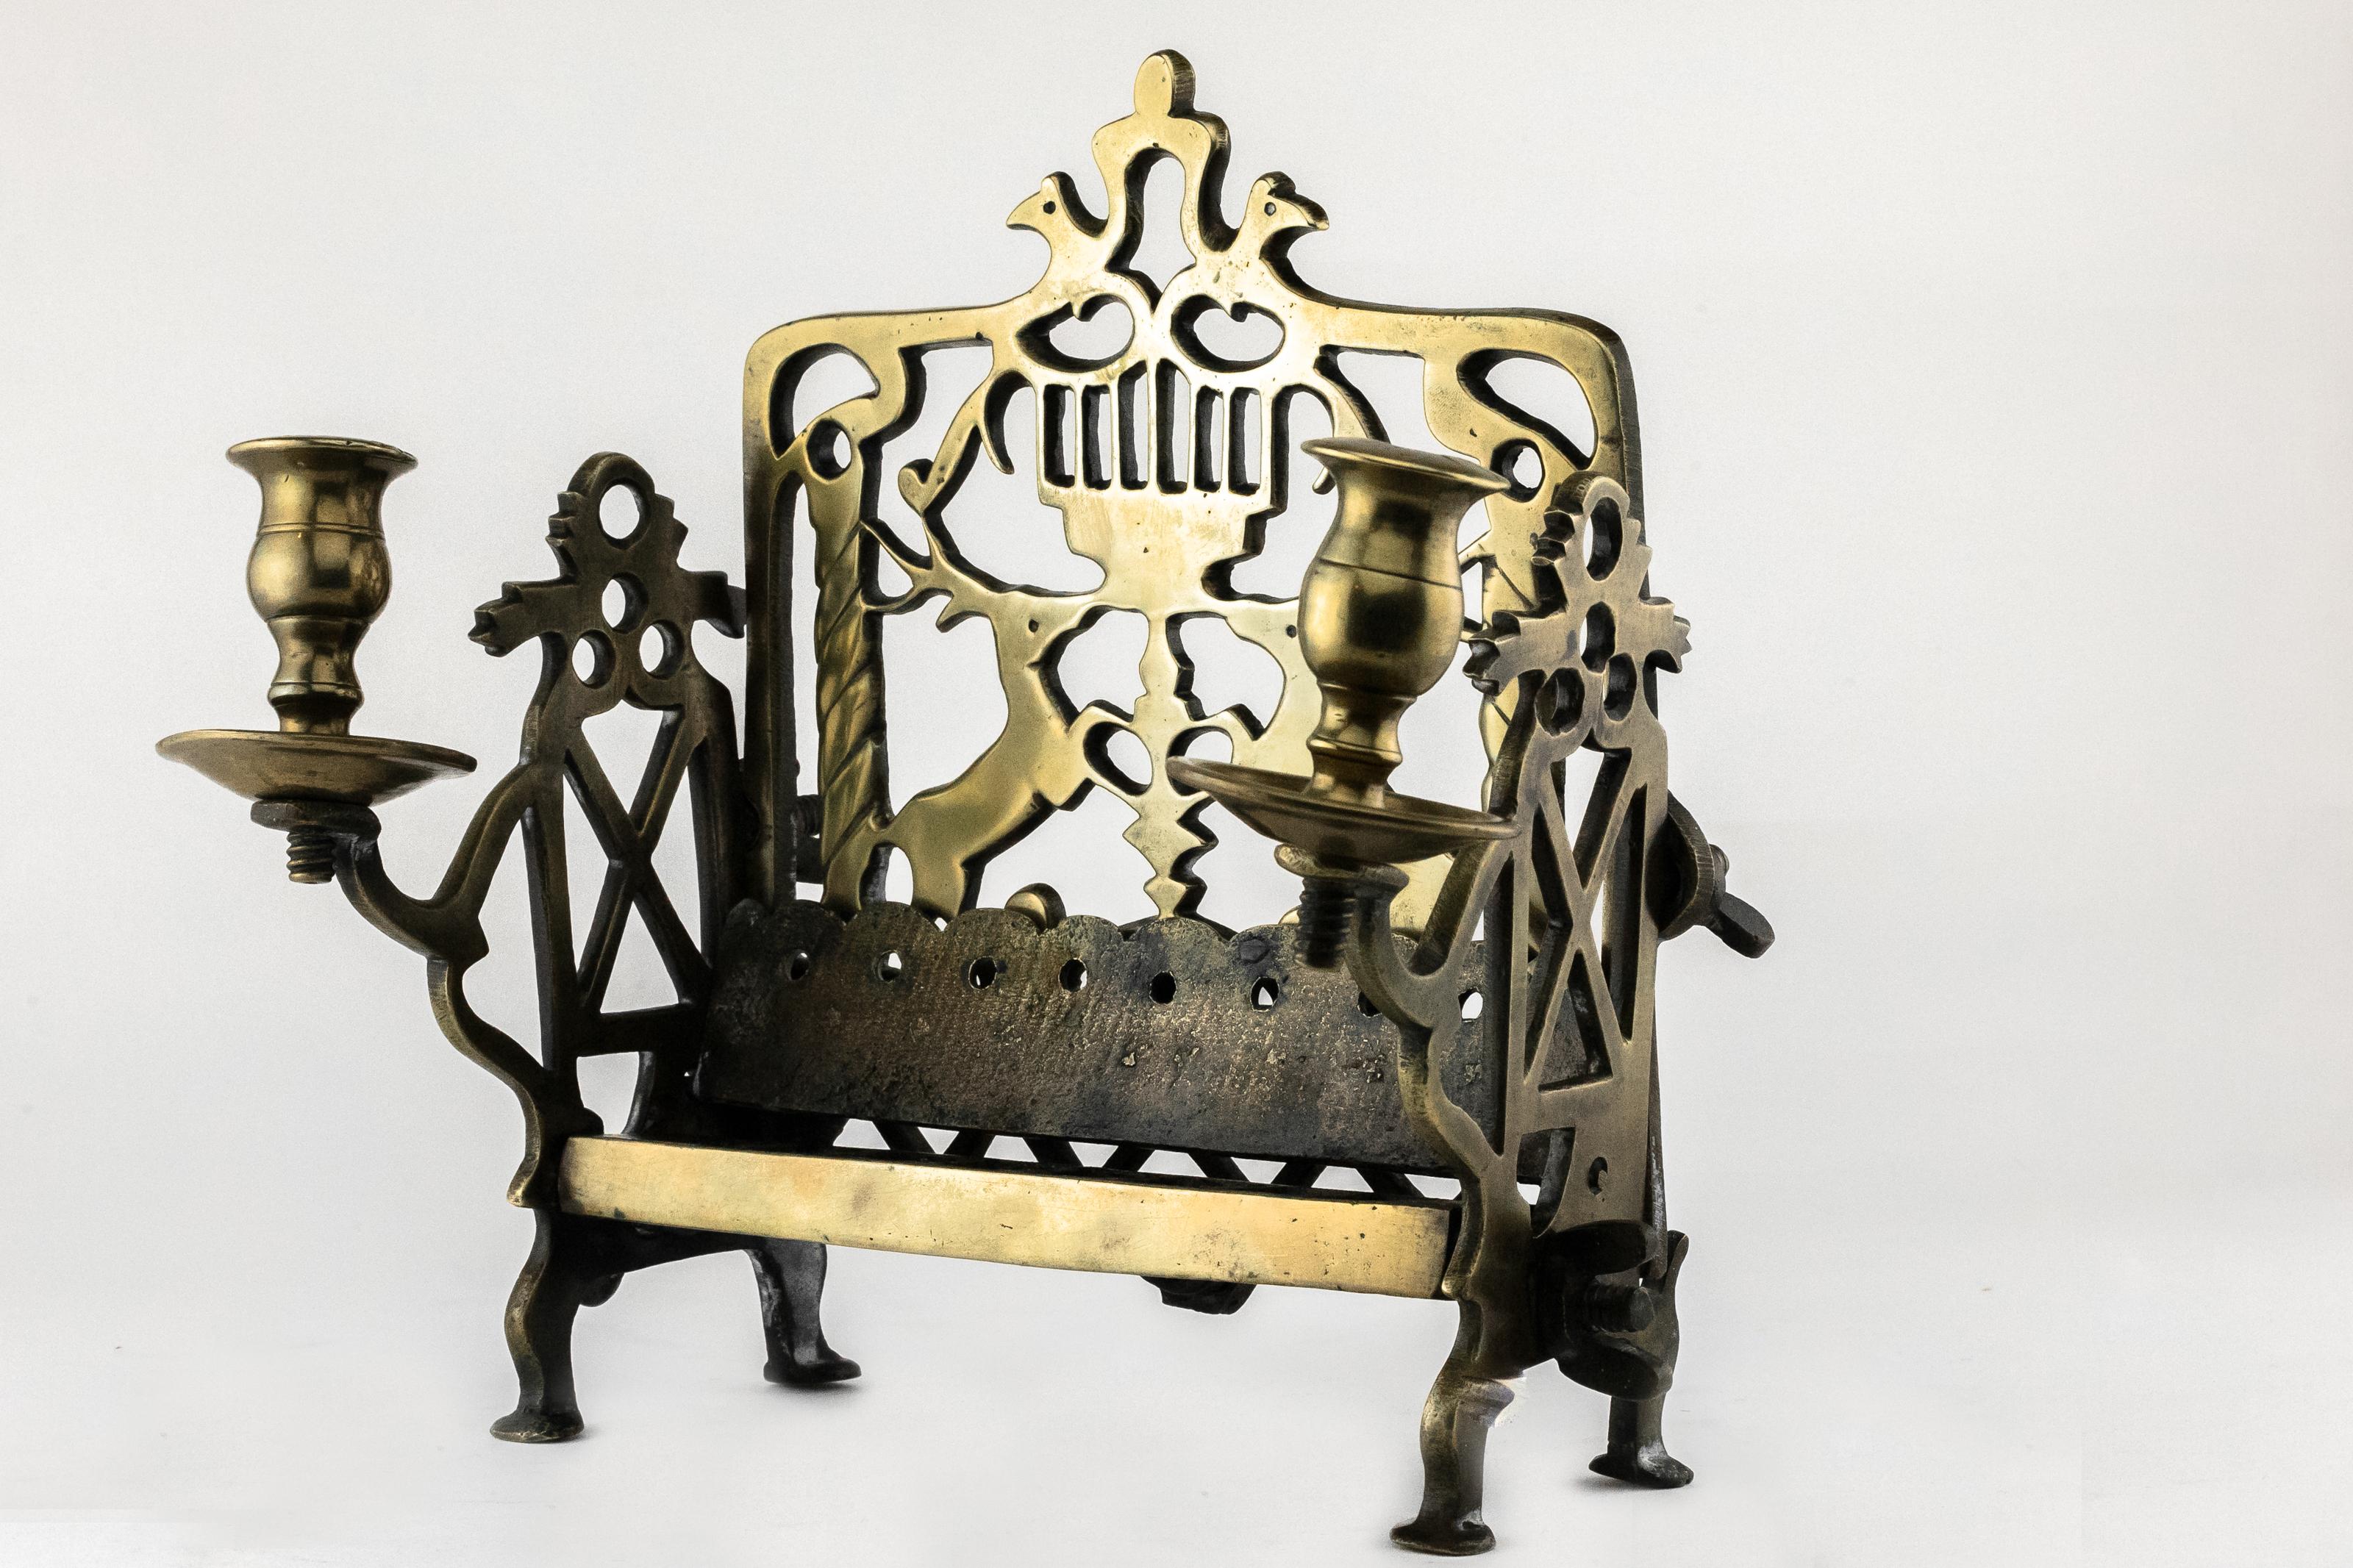 Chanukka-Lampe aus Messing, Polen, 18. Jahrhundert.
Messing, gegossen, ein durchbrochener, rechteckiger Sockel ist an den Seiten, die auf vier Beinen stehen, und an der Rückwand angeschraubt. Quaderförmiges Tablett, innen in acht würfelförmige